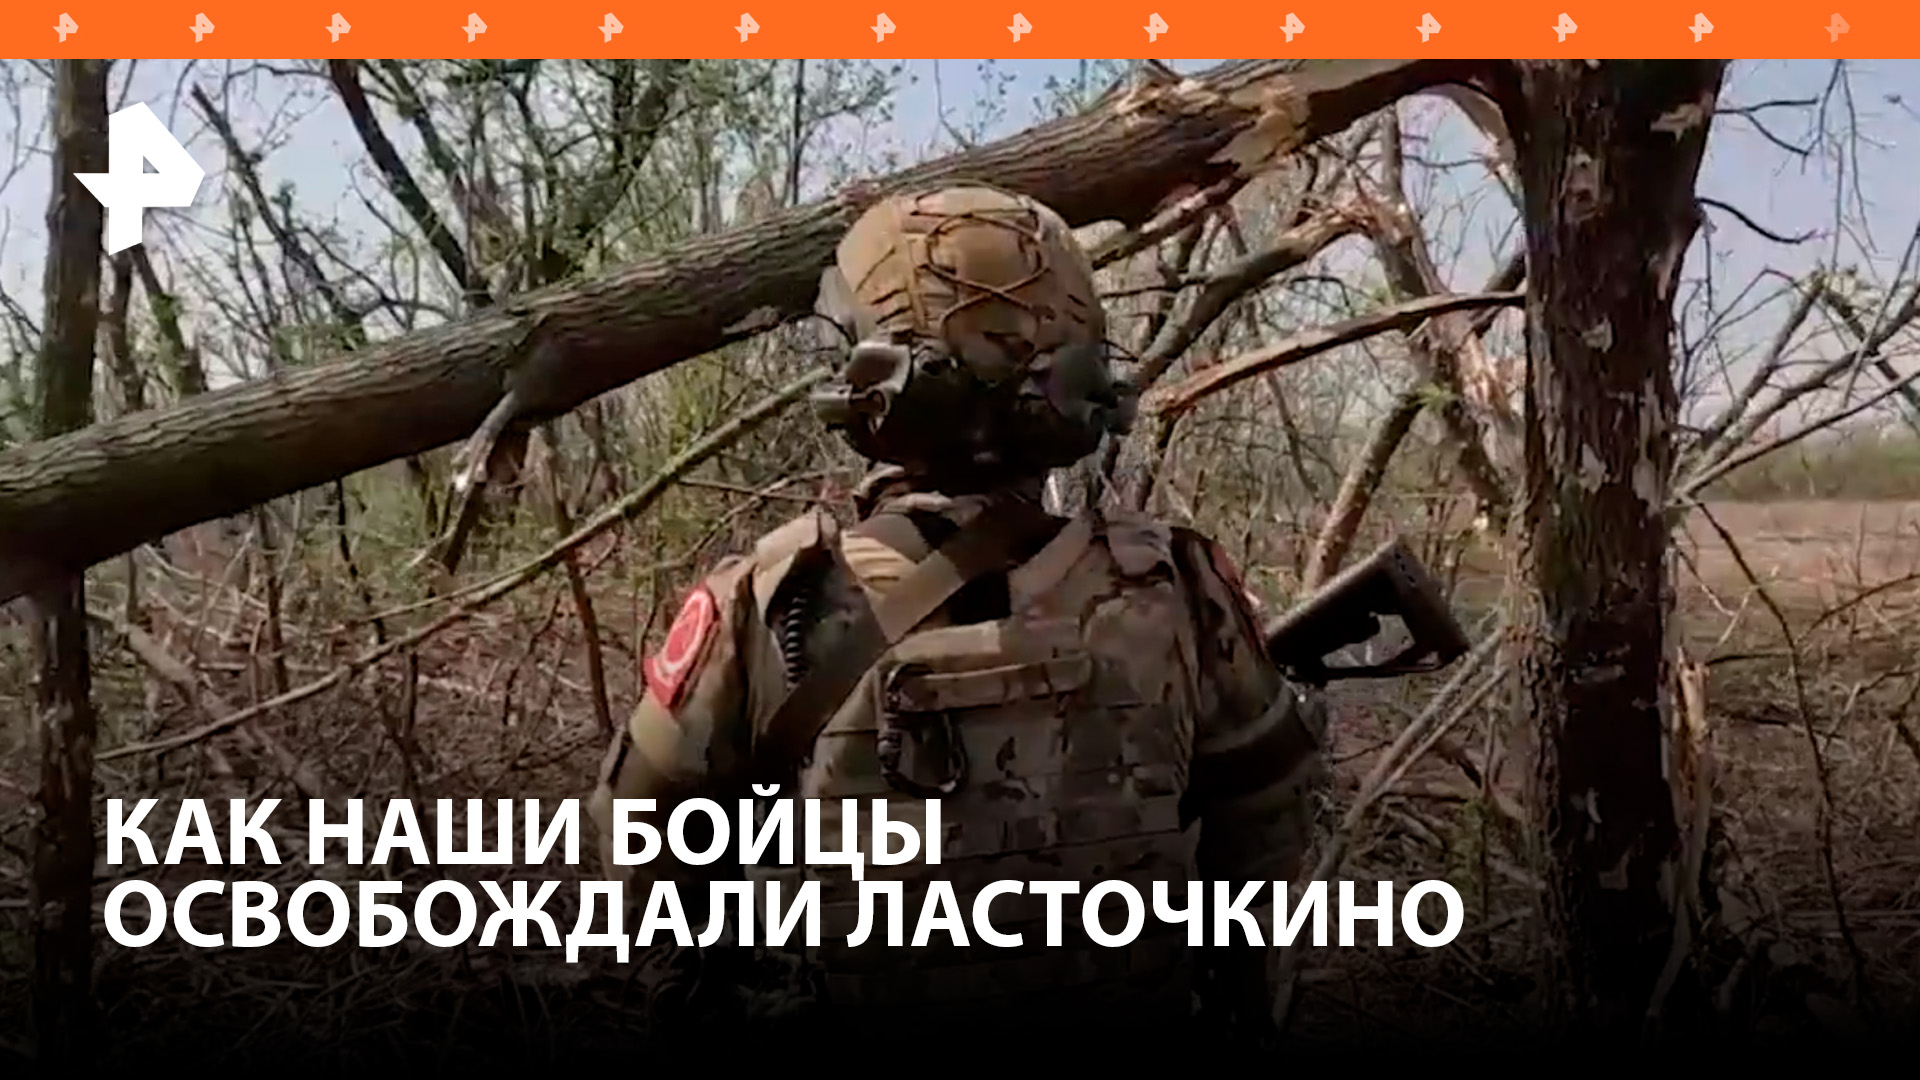 Как освобождали Ласточкино - рассказали военные группировки войск "Центр" / РЕН Новости